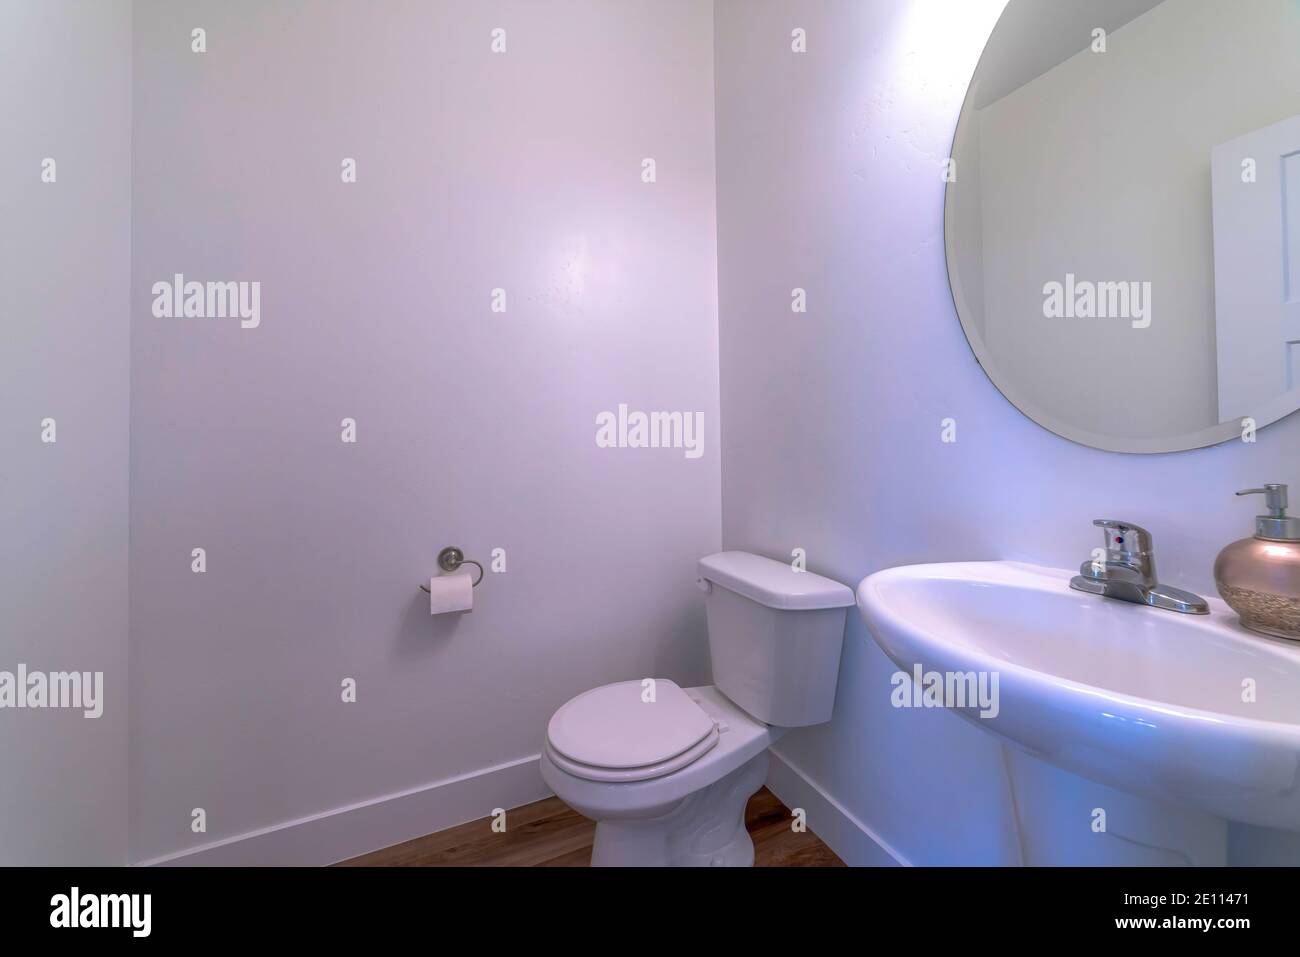 Toilettes et évier mural avec robinet en acier inoxydable à l'intérieur salle de bains de la maison Banque D'Images